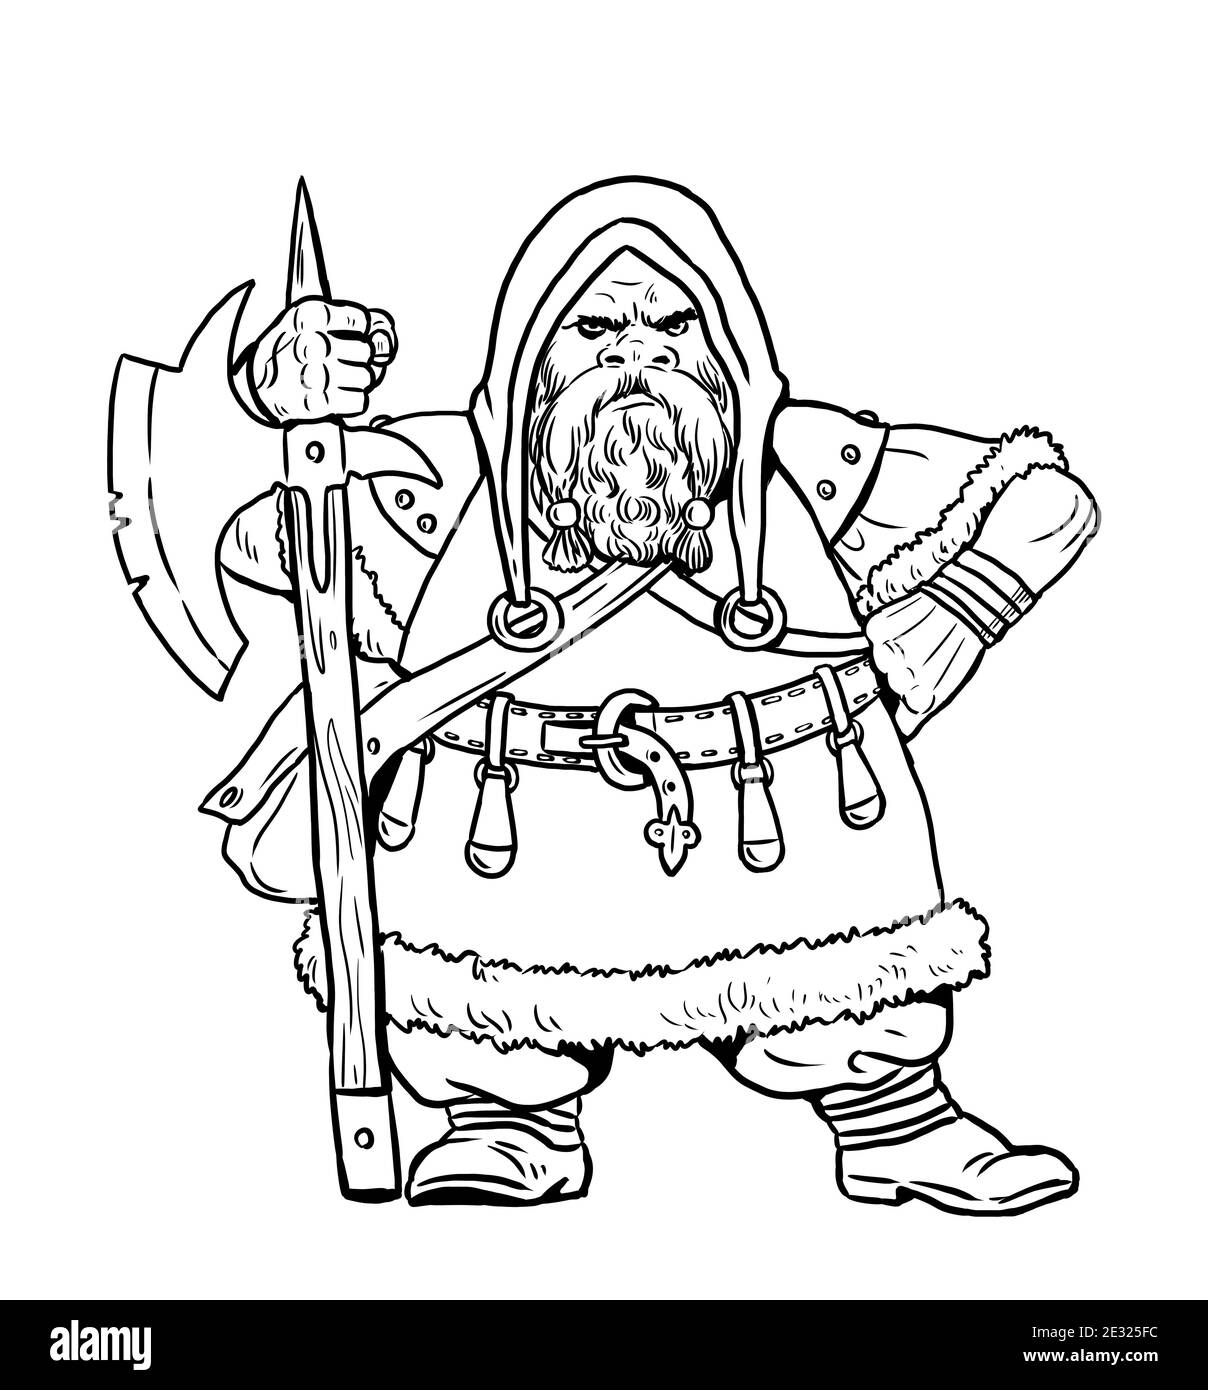 Dwarf with war ax. Fantasy drawing with dwarfs Stock Photo - Alamy